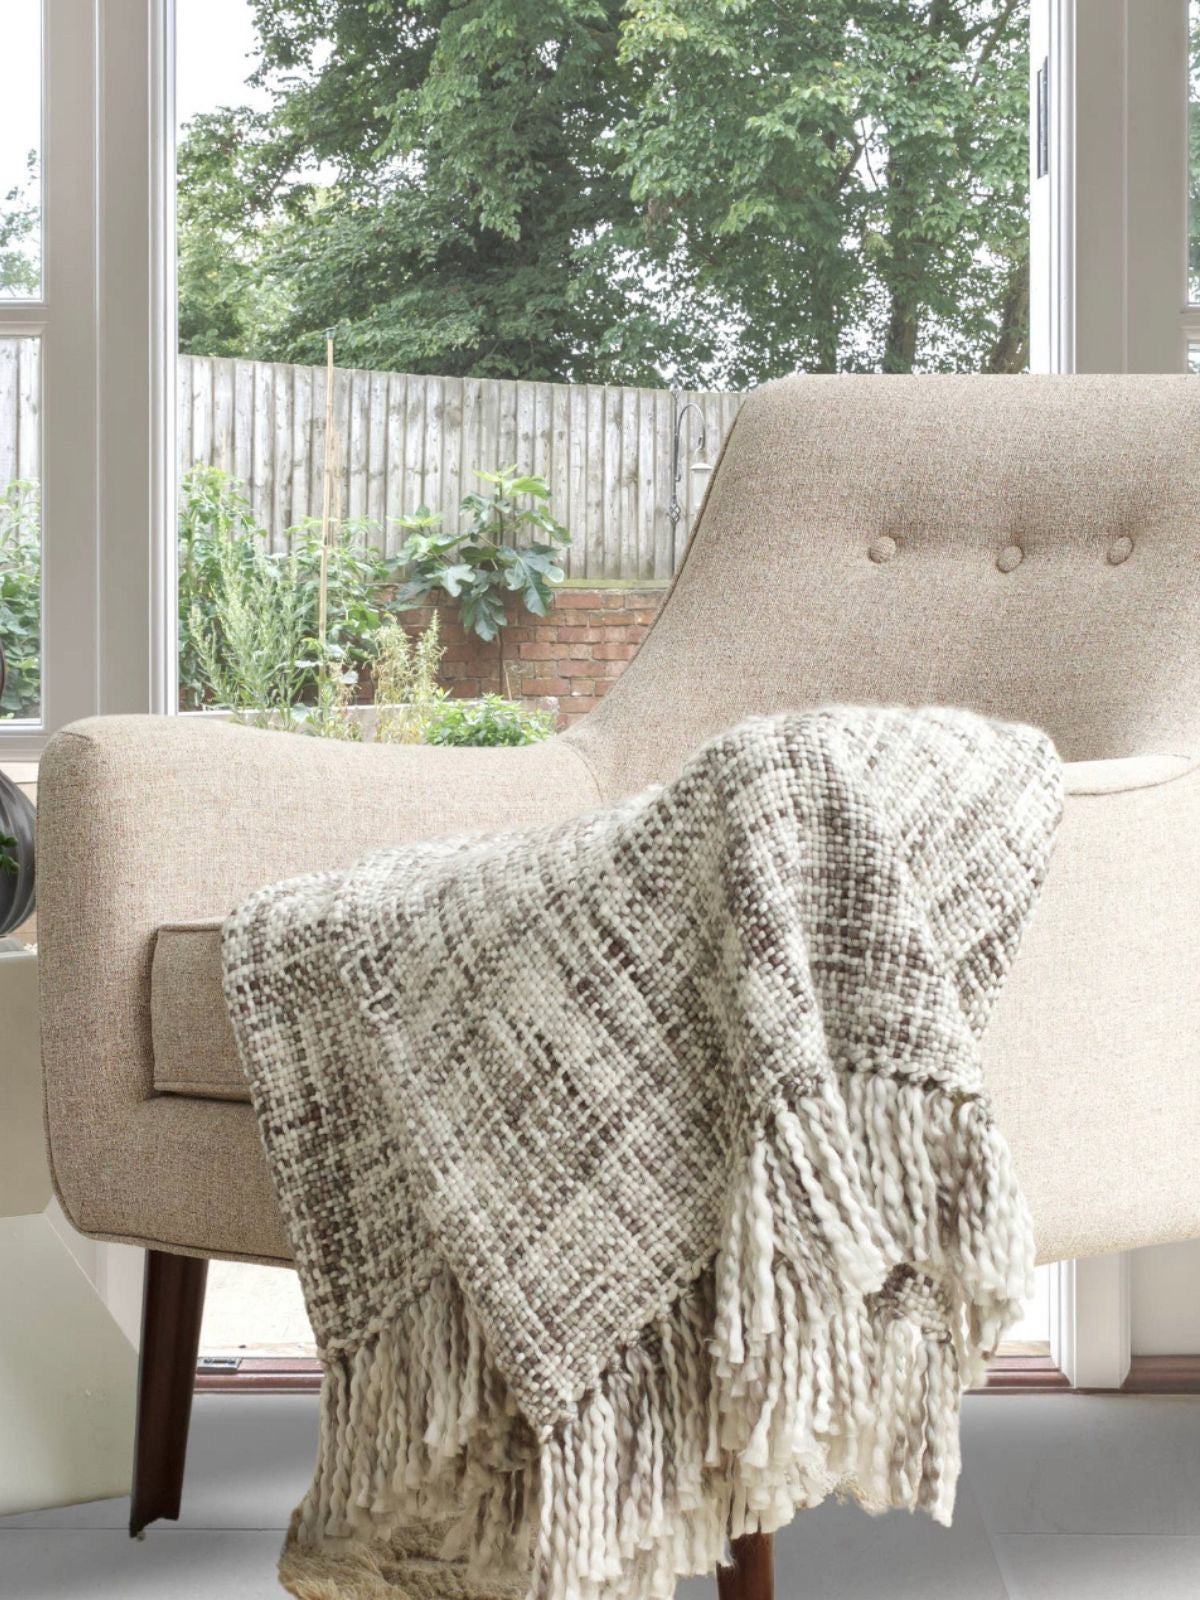 Platinum Grey Marled Basketweave Plush Knit 100% acrylic yarn Decorative Throw Sold by KYA Home Decor, 50W x 60L. 